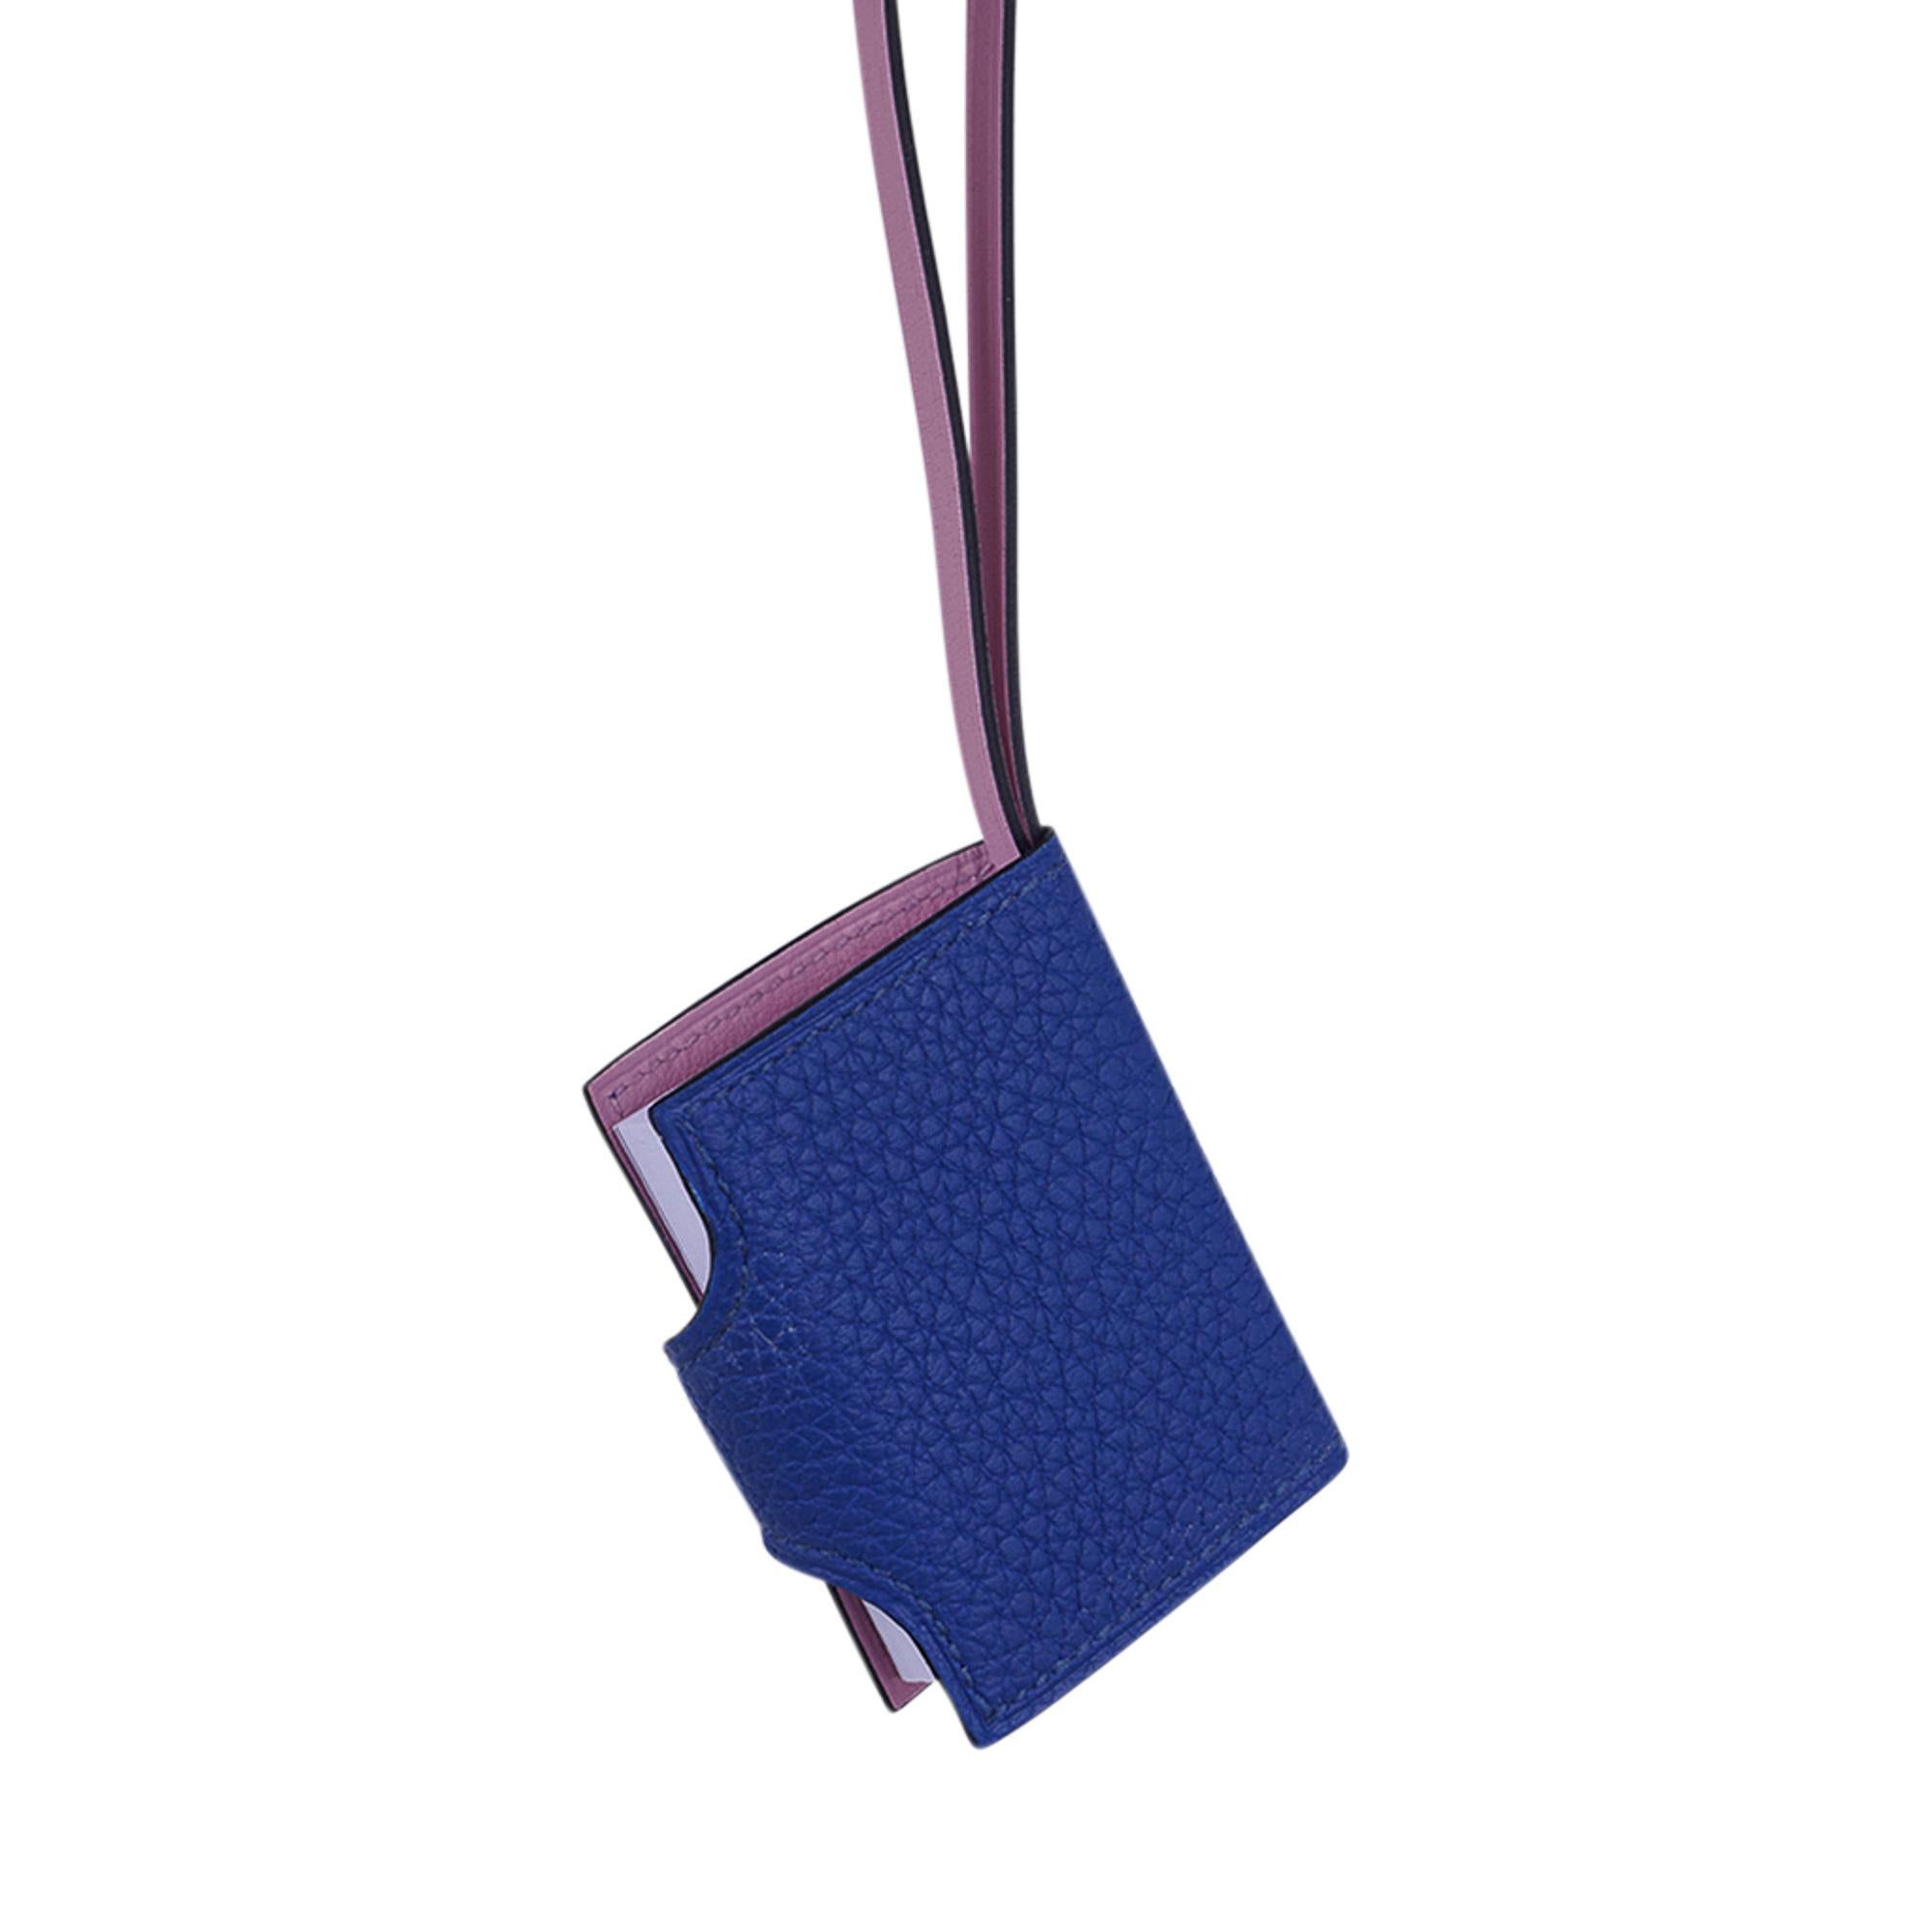 Hermes Ulysse Nano Bag Charm Blue de France / Mauve Sylvestre For Sale 5